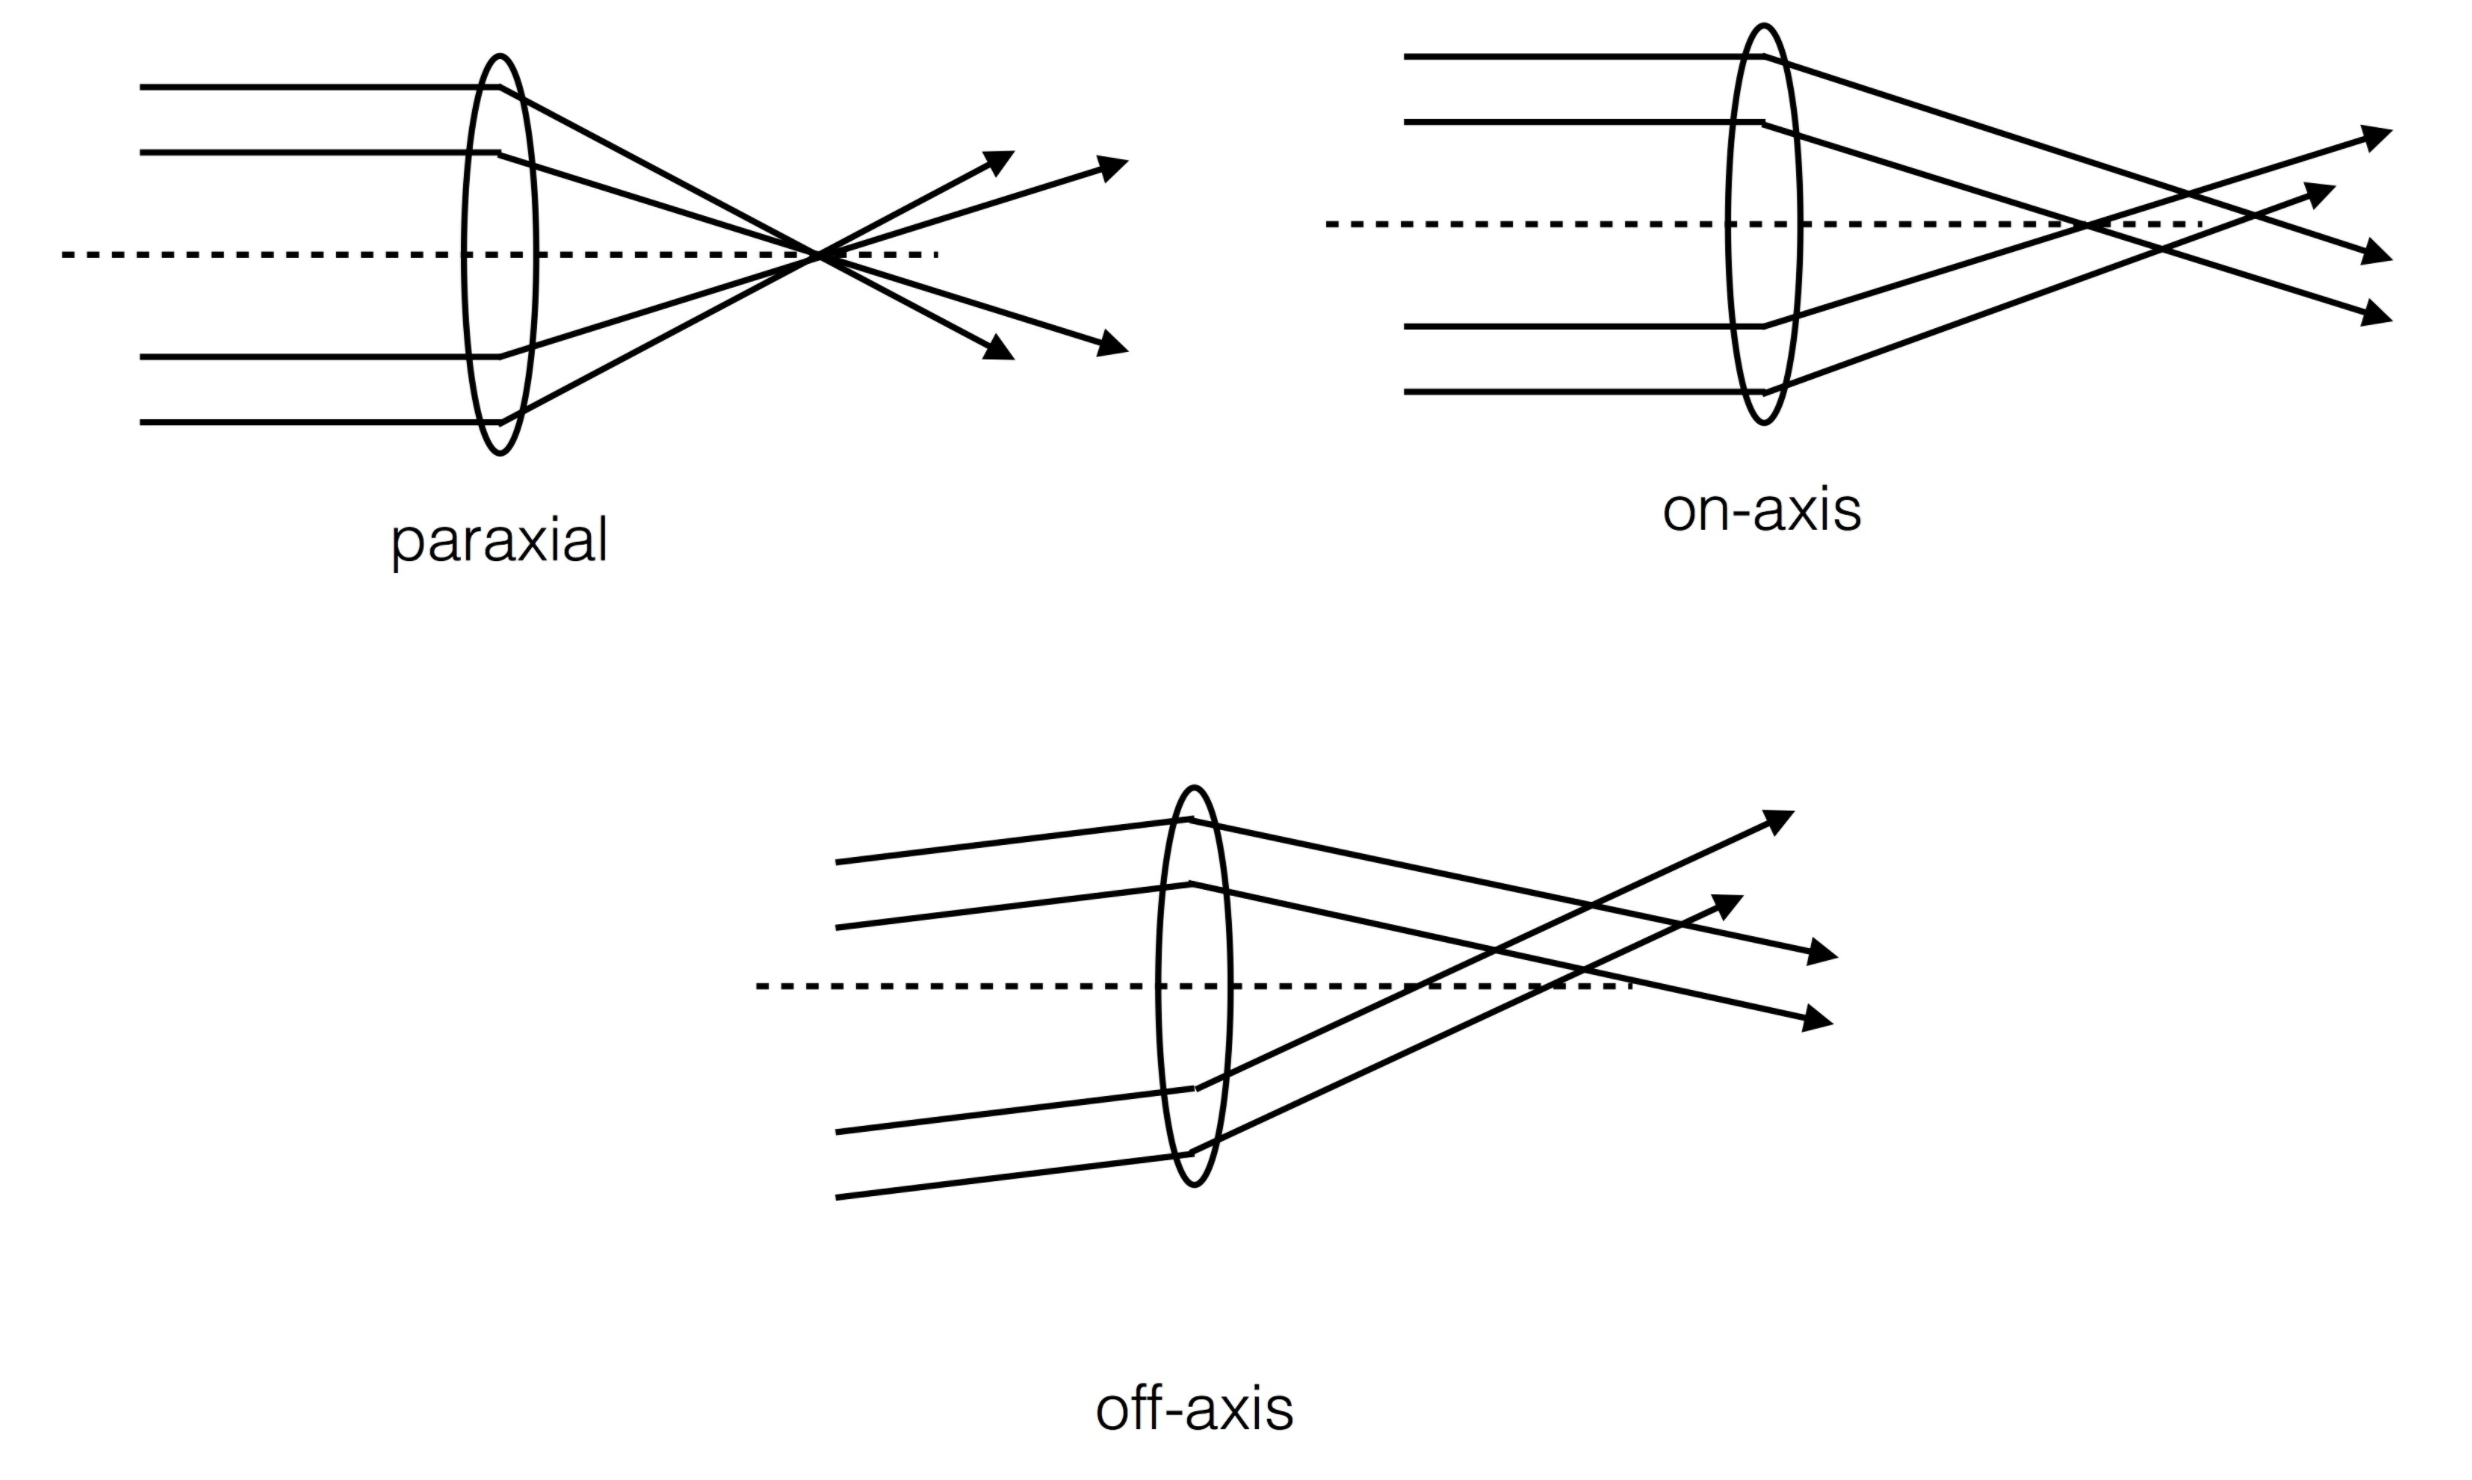 Optical models